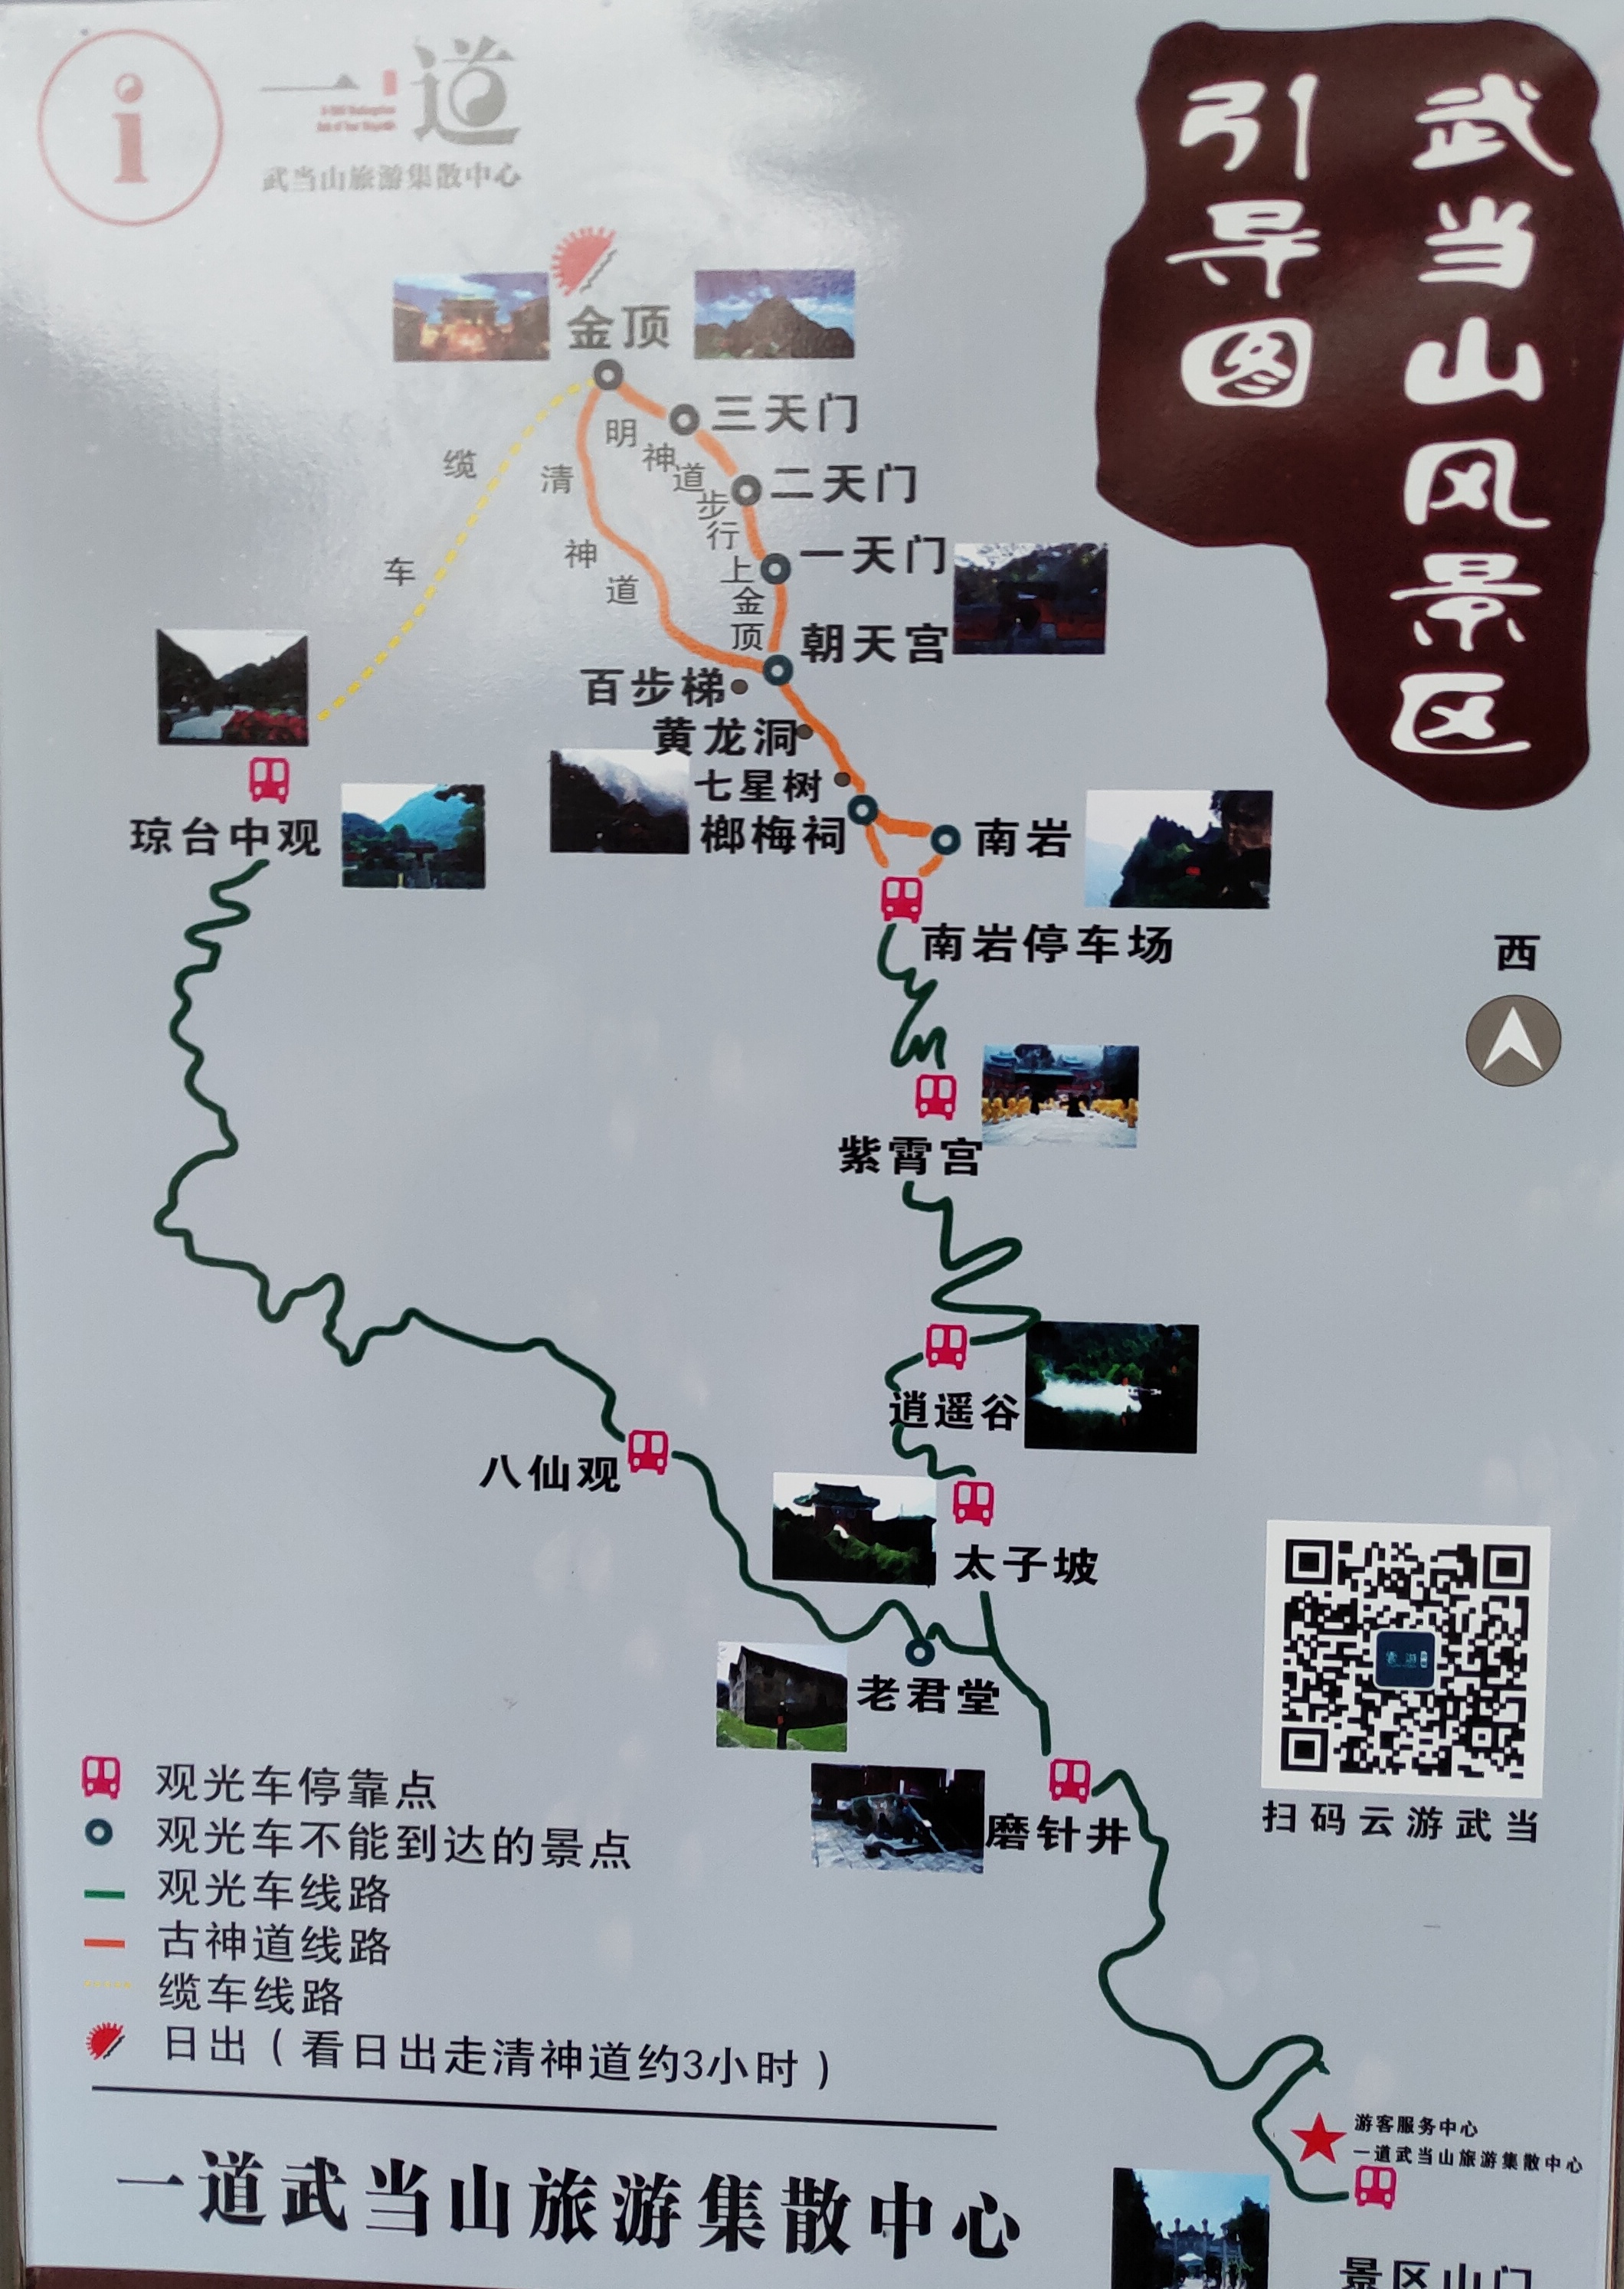 雨中的武当山 2021/第2集,丹江口旅游攻略